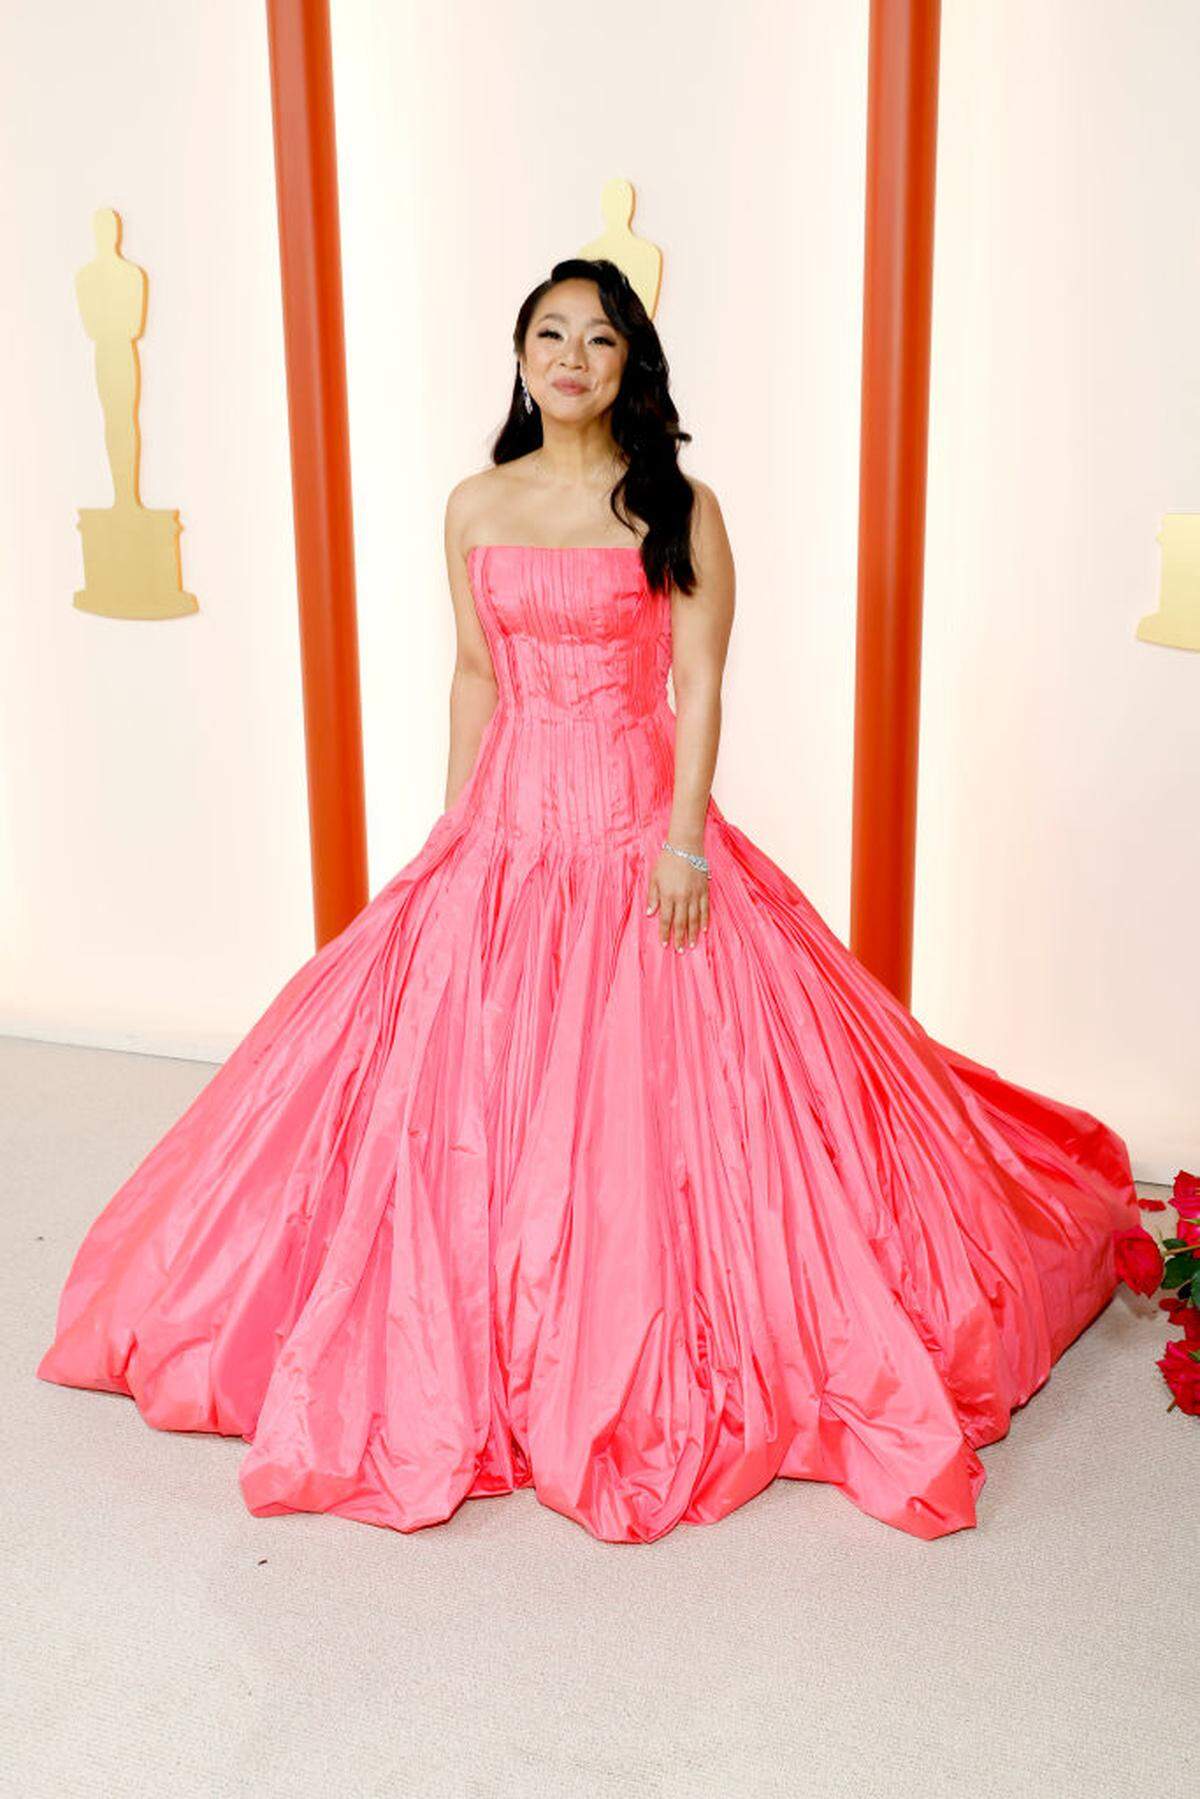 Farbe! Einige Prominente trauten sich trotz dezenter Teppichfarbe über etwas Buntes. So etwa Stephanie Hsu. Ihr pinkes Kleid ist Valentino Couture. 